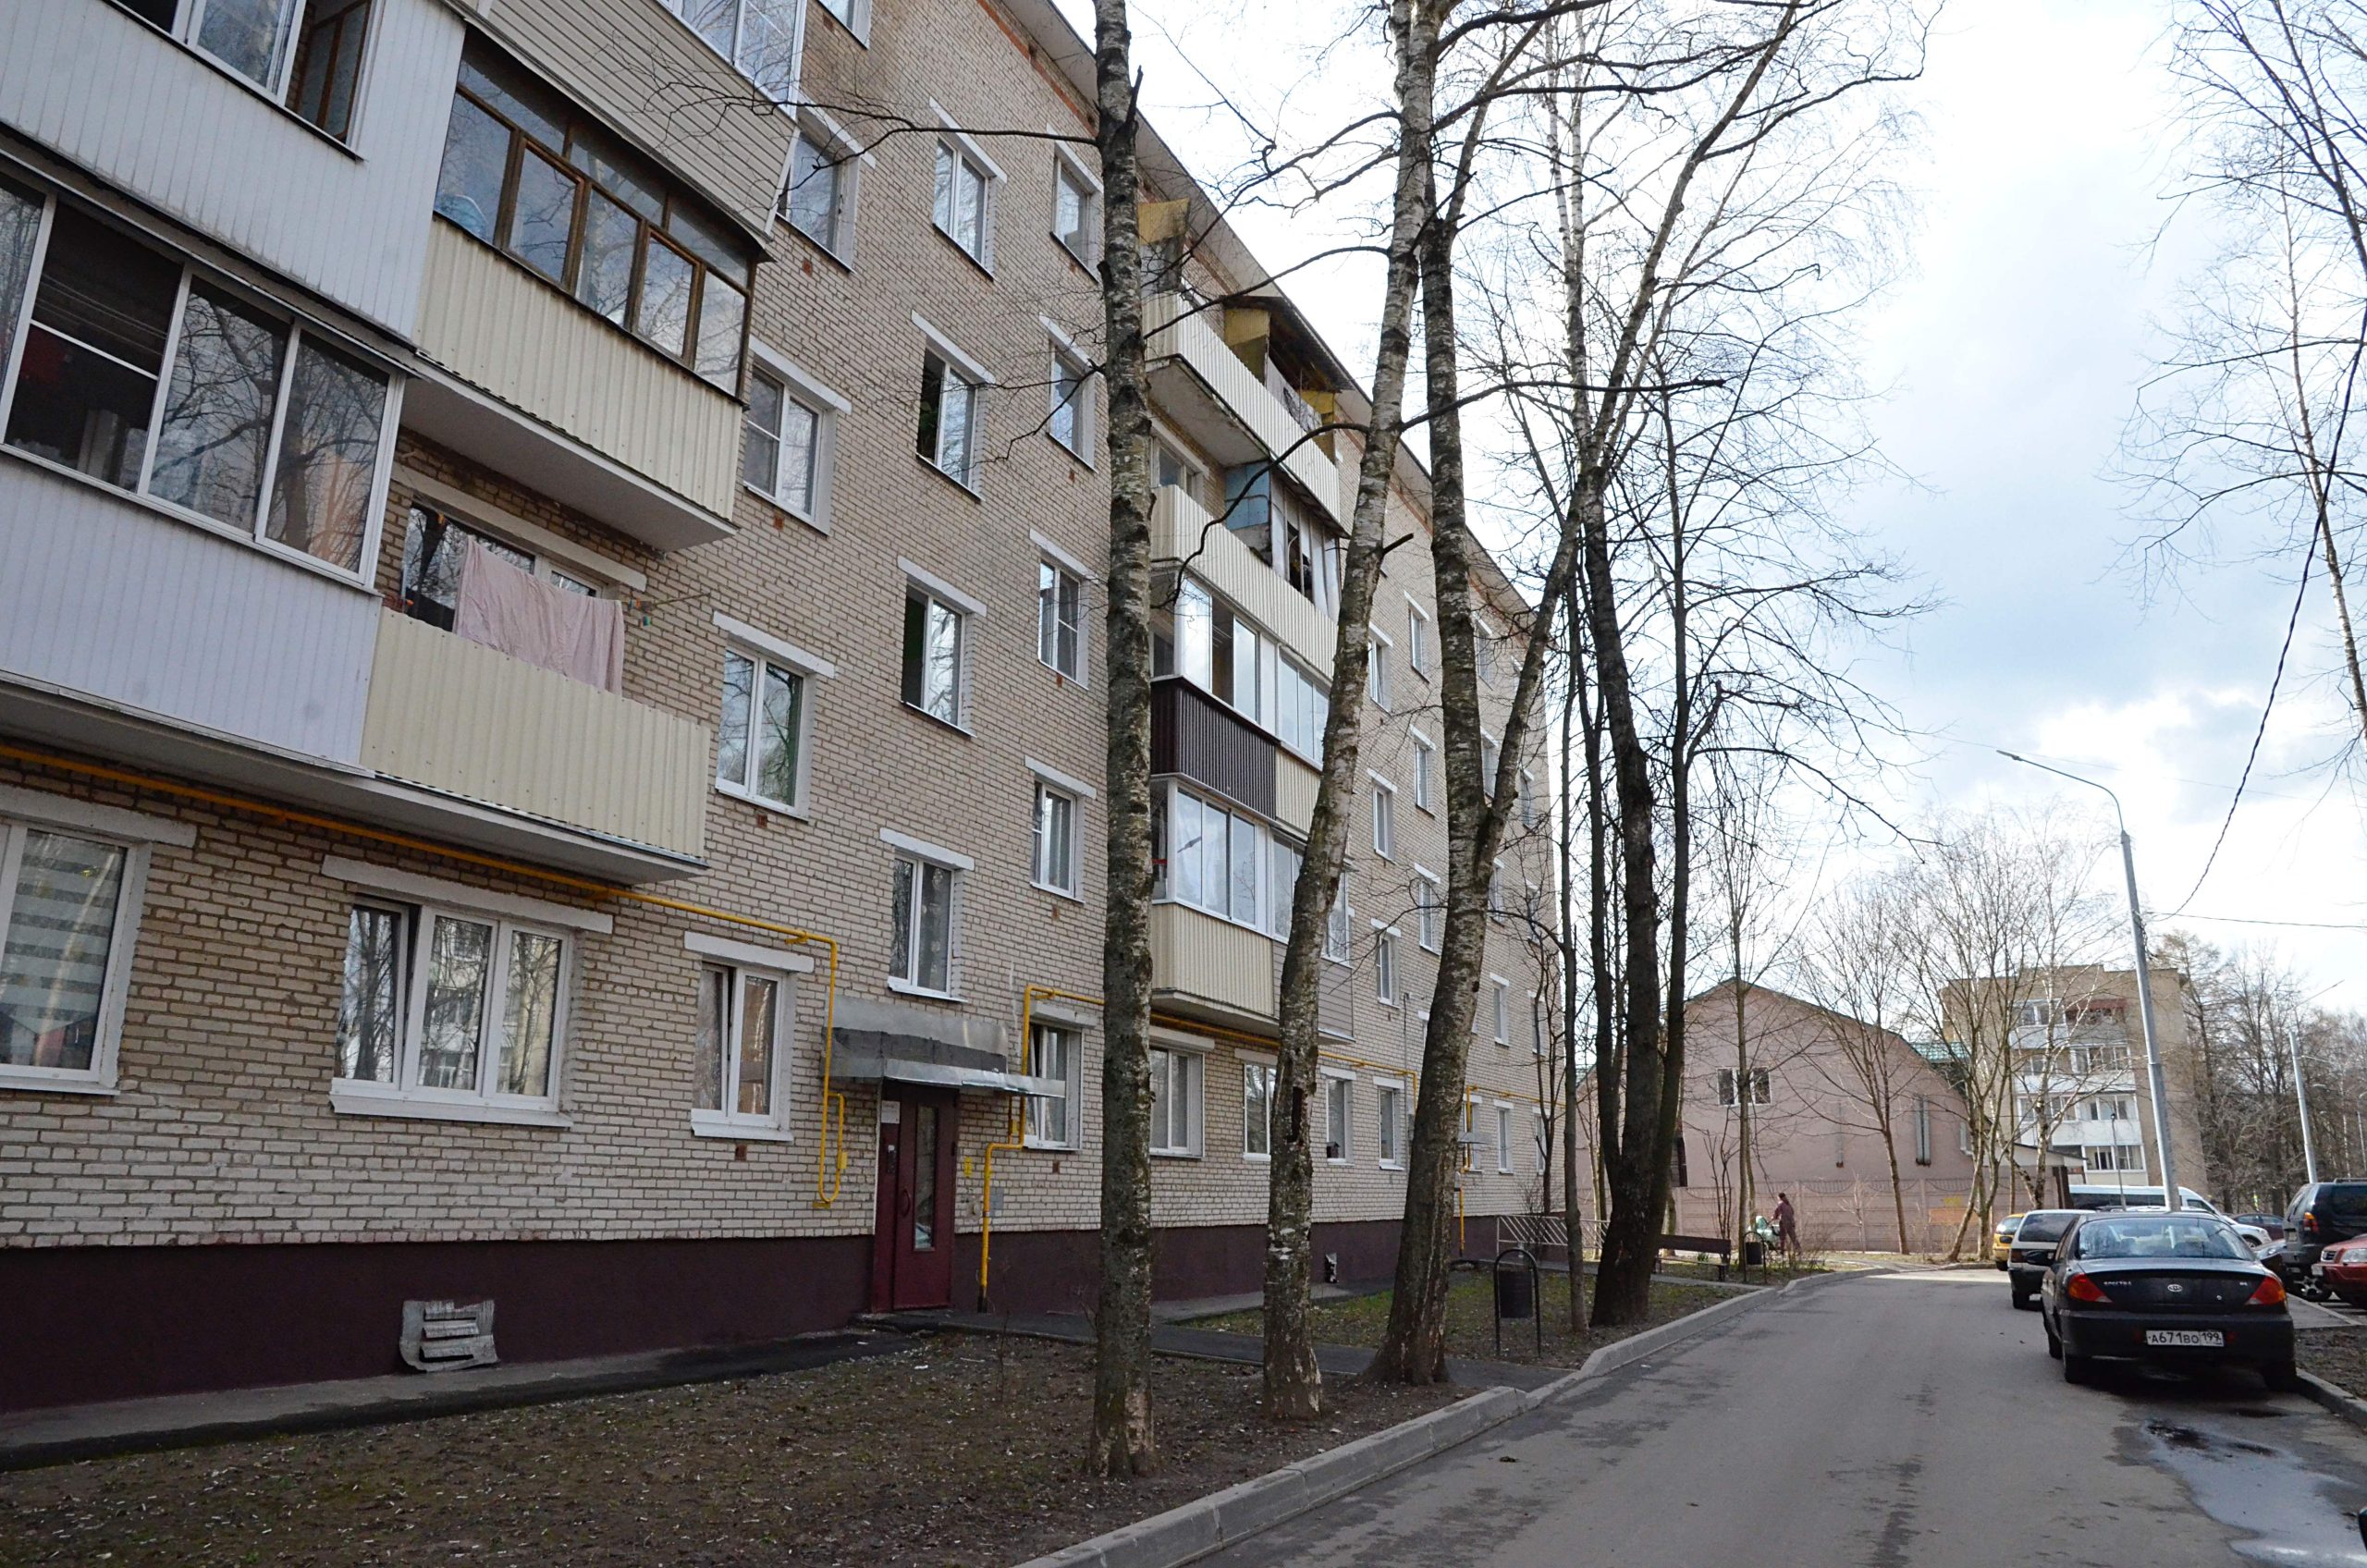 Нежилые помещения многоквартирных домах проверят в поселении Киевский